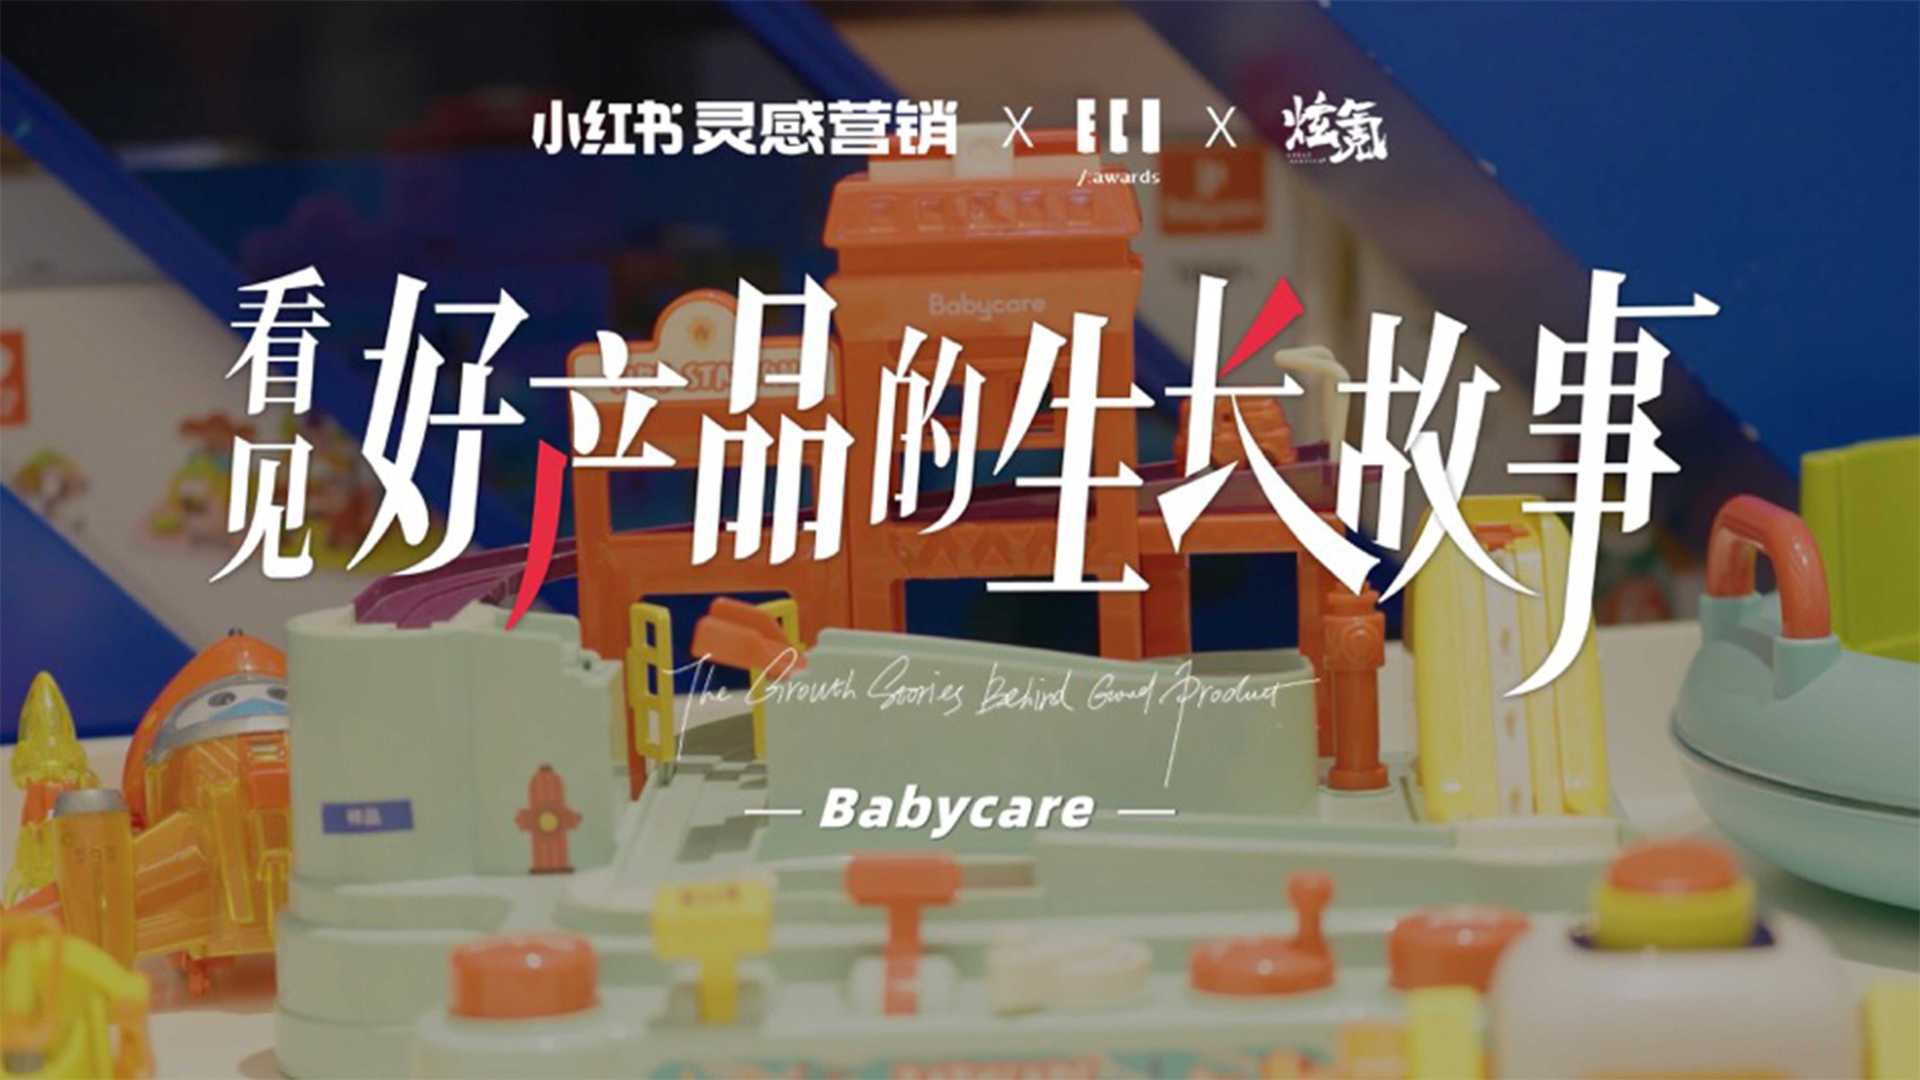 看见好产品的成长故事——Baby care